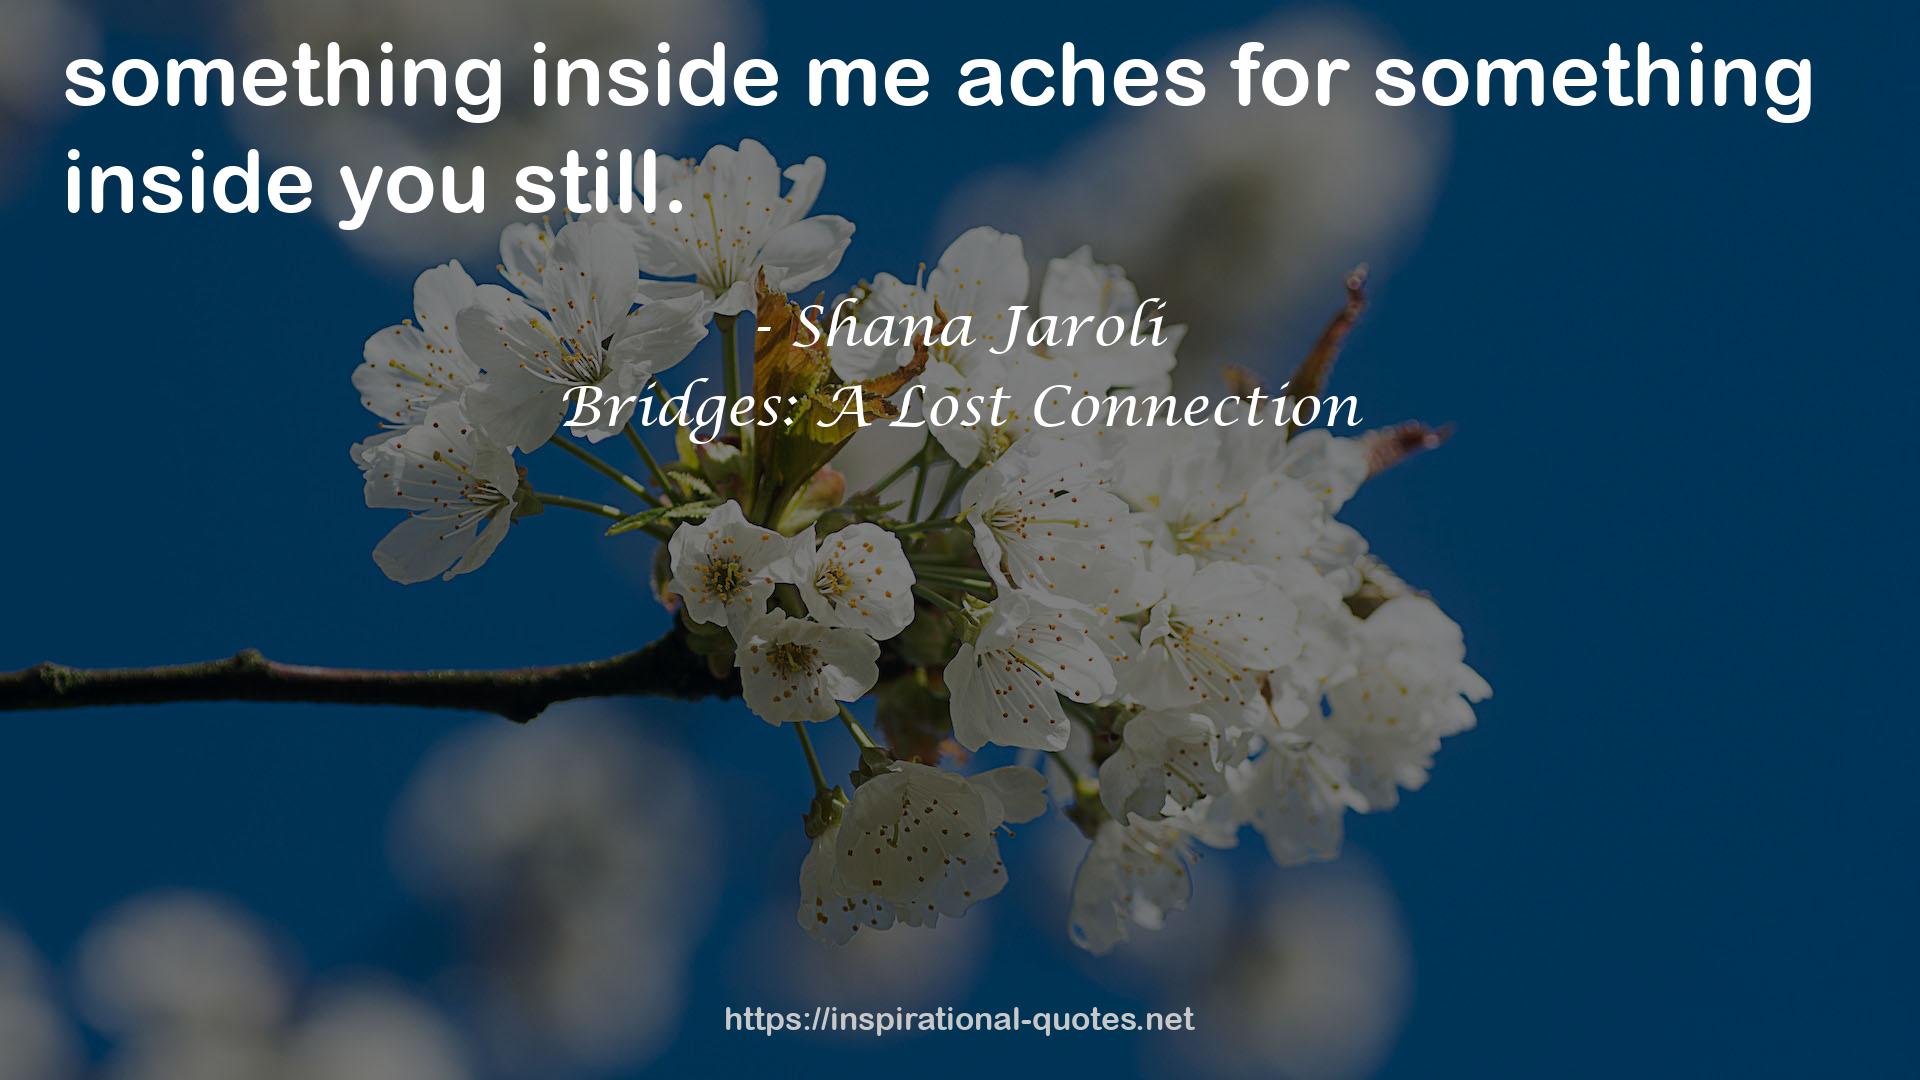 Bridges: A Lost Connection QUOTES